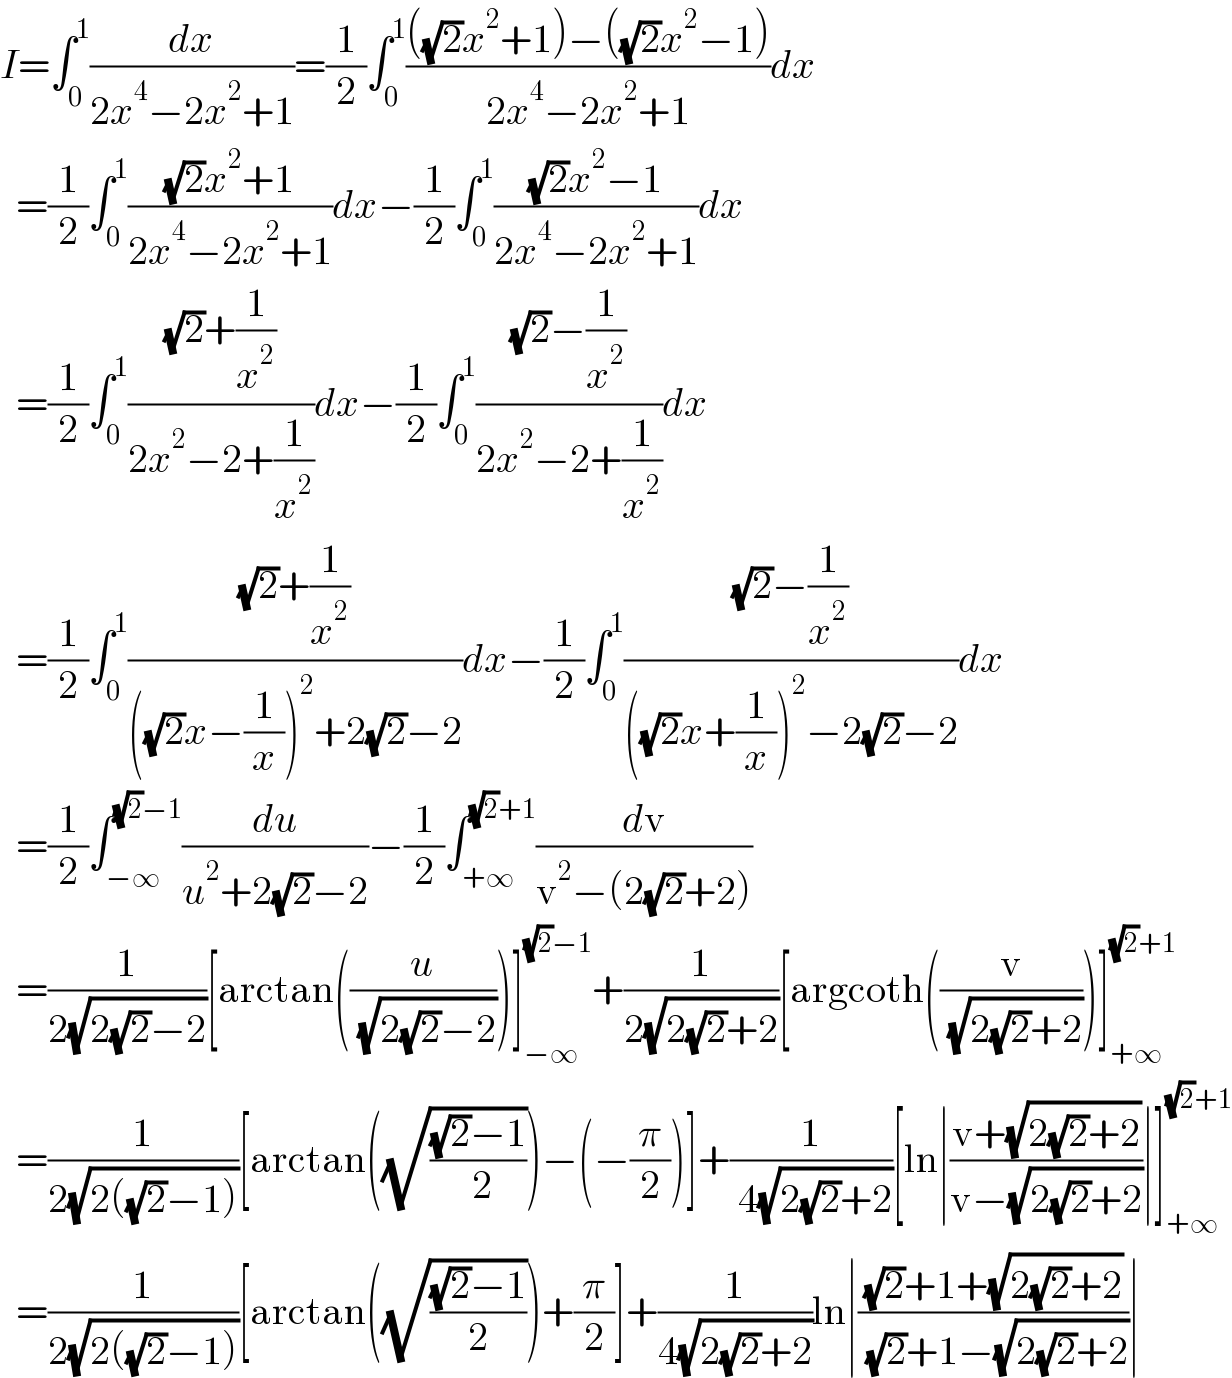 I=∫_0 ^1 (dx/(2x^4 −2x^2 +1))=(1/2)∫_0 ^1 ((((√2)x^2 +1)−((√2)x^2 −1))/(2x^4 −2x^2 +1))dx    =(1/2)∫_0 ^1 (((√2)x^2 +1)/(2x^4 −2x^2 +1))dx−(1/2)∫_0 ^1 (((√2)x^2 −1)/(2x^4 −2x^2 +1))dx    =(1/2)∫_0 ^1 (((√2)+(1/x^2 ))/(2x^2 −2+(1/x^2 )))dx−(1/2)∫_0 ^1 (((√2)−(1/x^2 ))/(2x^2 −2+(1/x^2 )))dx    =(1/2)∫_0 ^1 (((√2)+(1/x^2 ))/(((√2)x−(1/x))^2 +2(√2)−2))dx−(1/2)∫_0 ^1 (((√2)−(1/x^2 ))/(((√2)x+(1/x))^2 −2(√2)−2))dx    =(1/2)∫_(−∞) ^((√2)−1) (du/(u^2 +2(√2)−2))−(1/2)∫_(+∞) ^((√2)+1) (dv/(v^2 −(2(√2)+2)))    =(1/(2(√(2(√2)−2))))[arctan((u/( (√(2(√2)−2)))))]_(−∞) ^((√2)−1) +(1/(2(√(2(√2)+2))))[argcoth((v/( (√(2(√2)+2)))))]_(+∞) ^((√2)+1)     =(1/(2(√(2((√2)−1)))))[arctan((√(((√2)−1)/( 2))))−(−(π/2))]+(1/( 4(√(2(√2)+2))))[ln∣((v+(√(2(√2)+2)))/(v−(√(2(√2)+2))))∣]_(+∞) ^((√2)+1)     =(1/(2(√(2((√2)−1)))))[arctan((√(((√2)−1)/2)))+(π/2)]+(1/(4(√(2(√2)+2))))ln∣(((√2)+1+(√(2(√2)+2)))/( (√2)+1−(√(2(√2)+2))))∣  